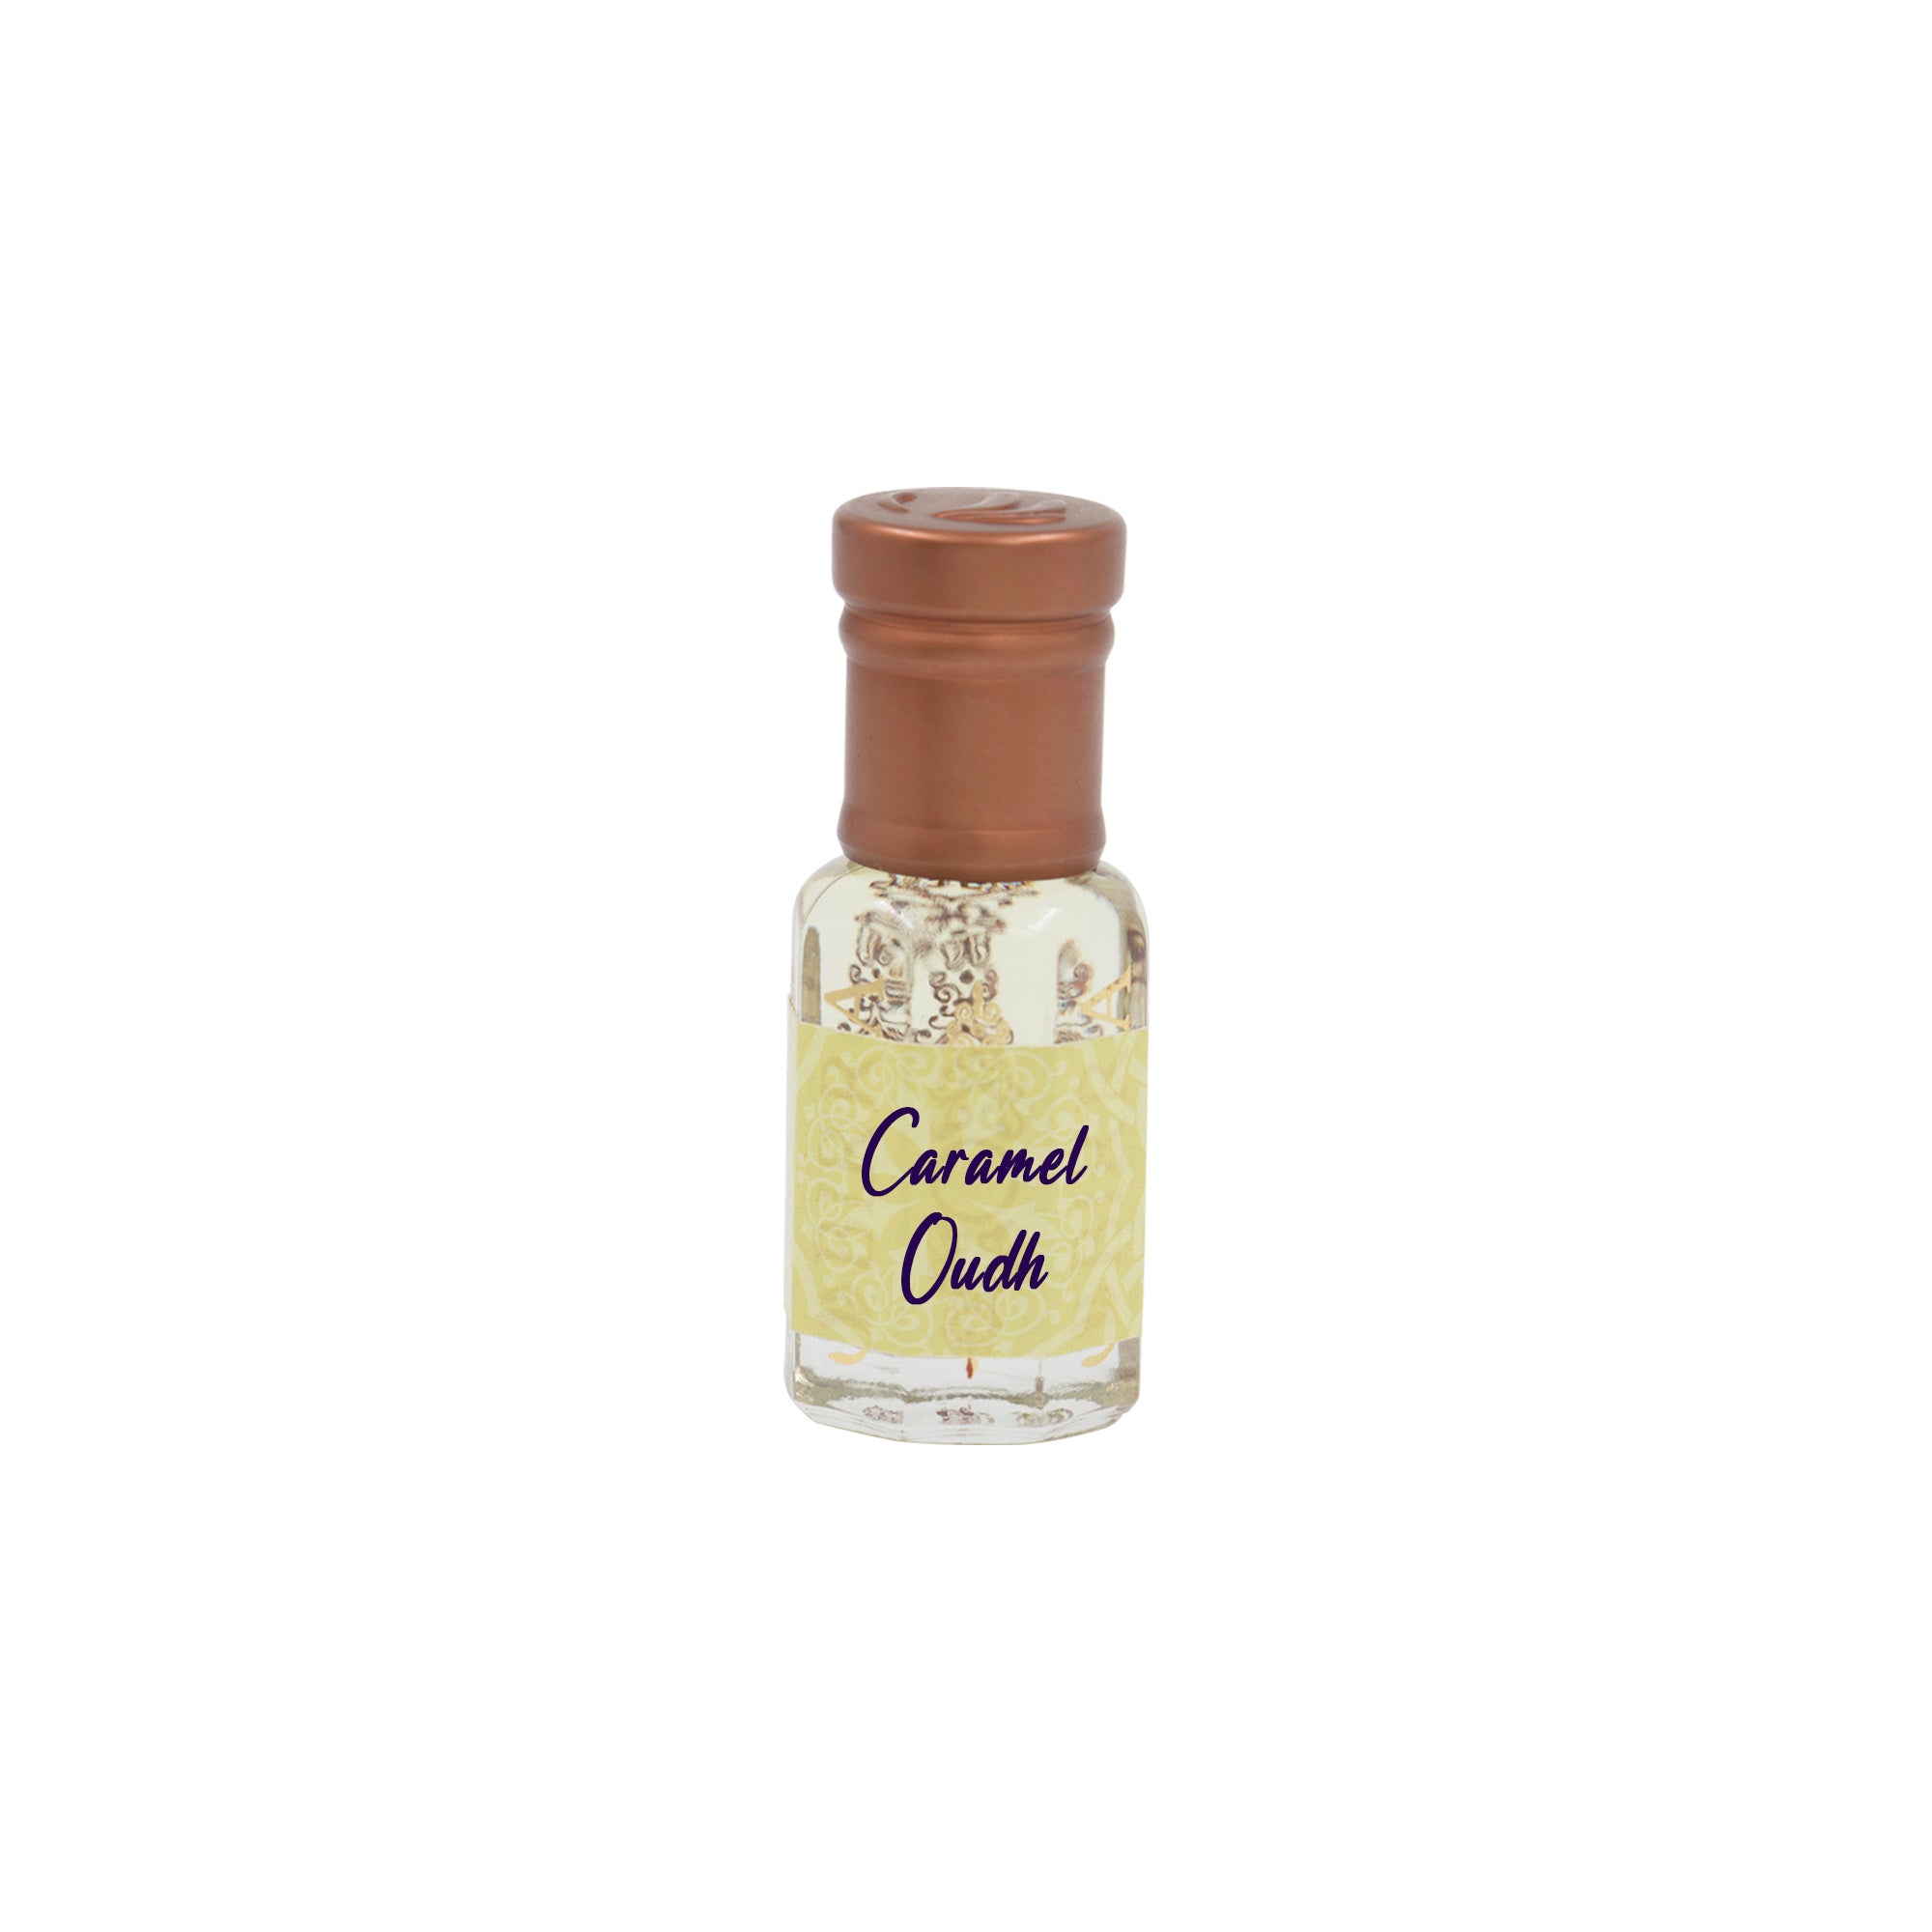 Caramel Oud - Premium Attar